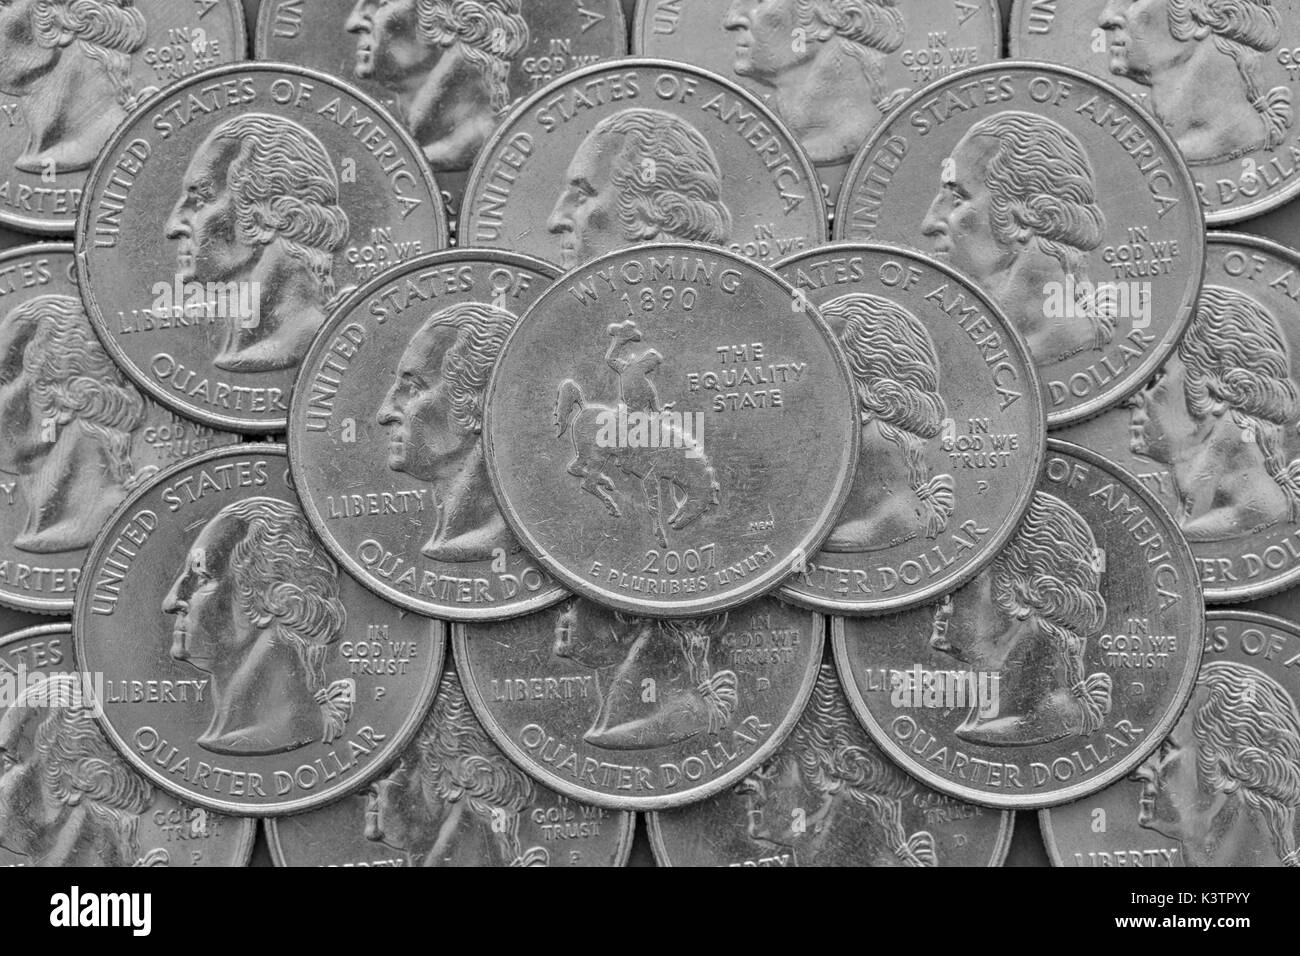 Wyoming State und Münzen der USA. Stapel der US quarter Münzen mit George Washington und auf der Oberseite ein Viertel der Wyoming State. Stockfoto